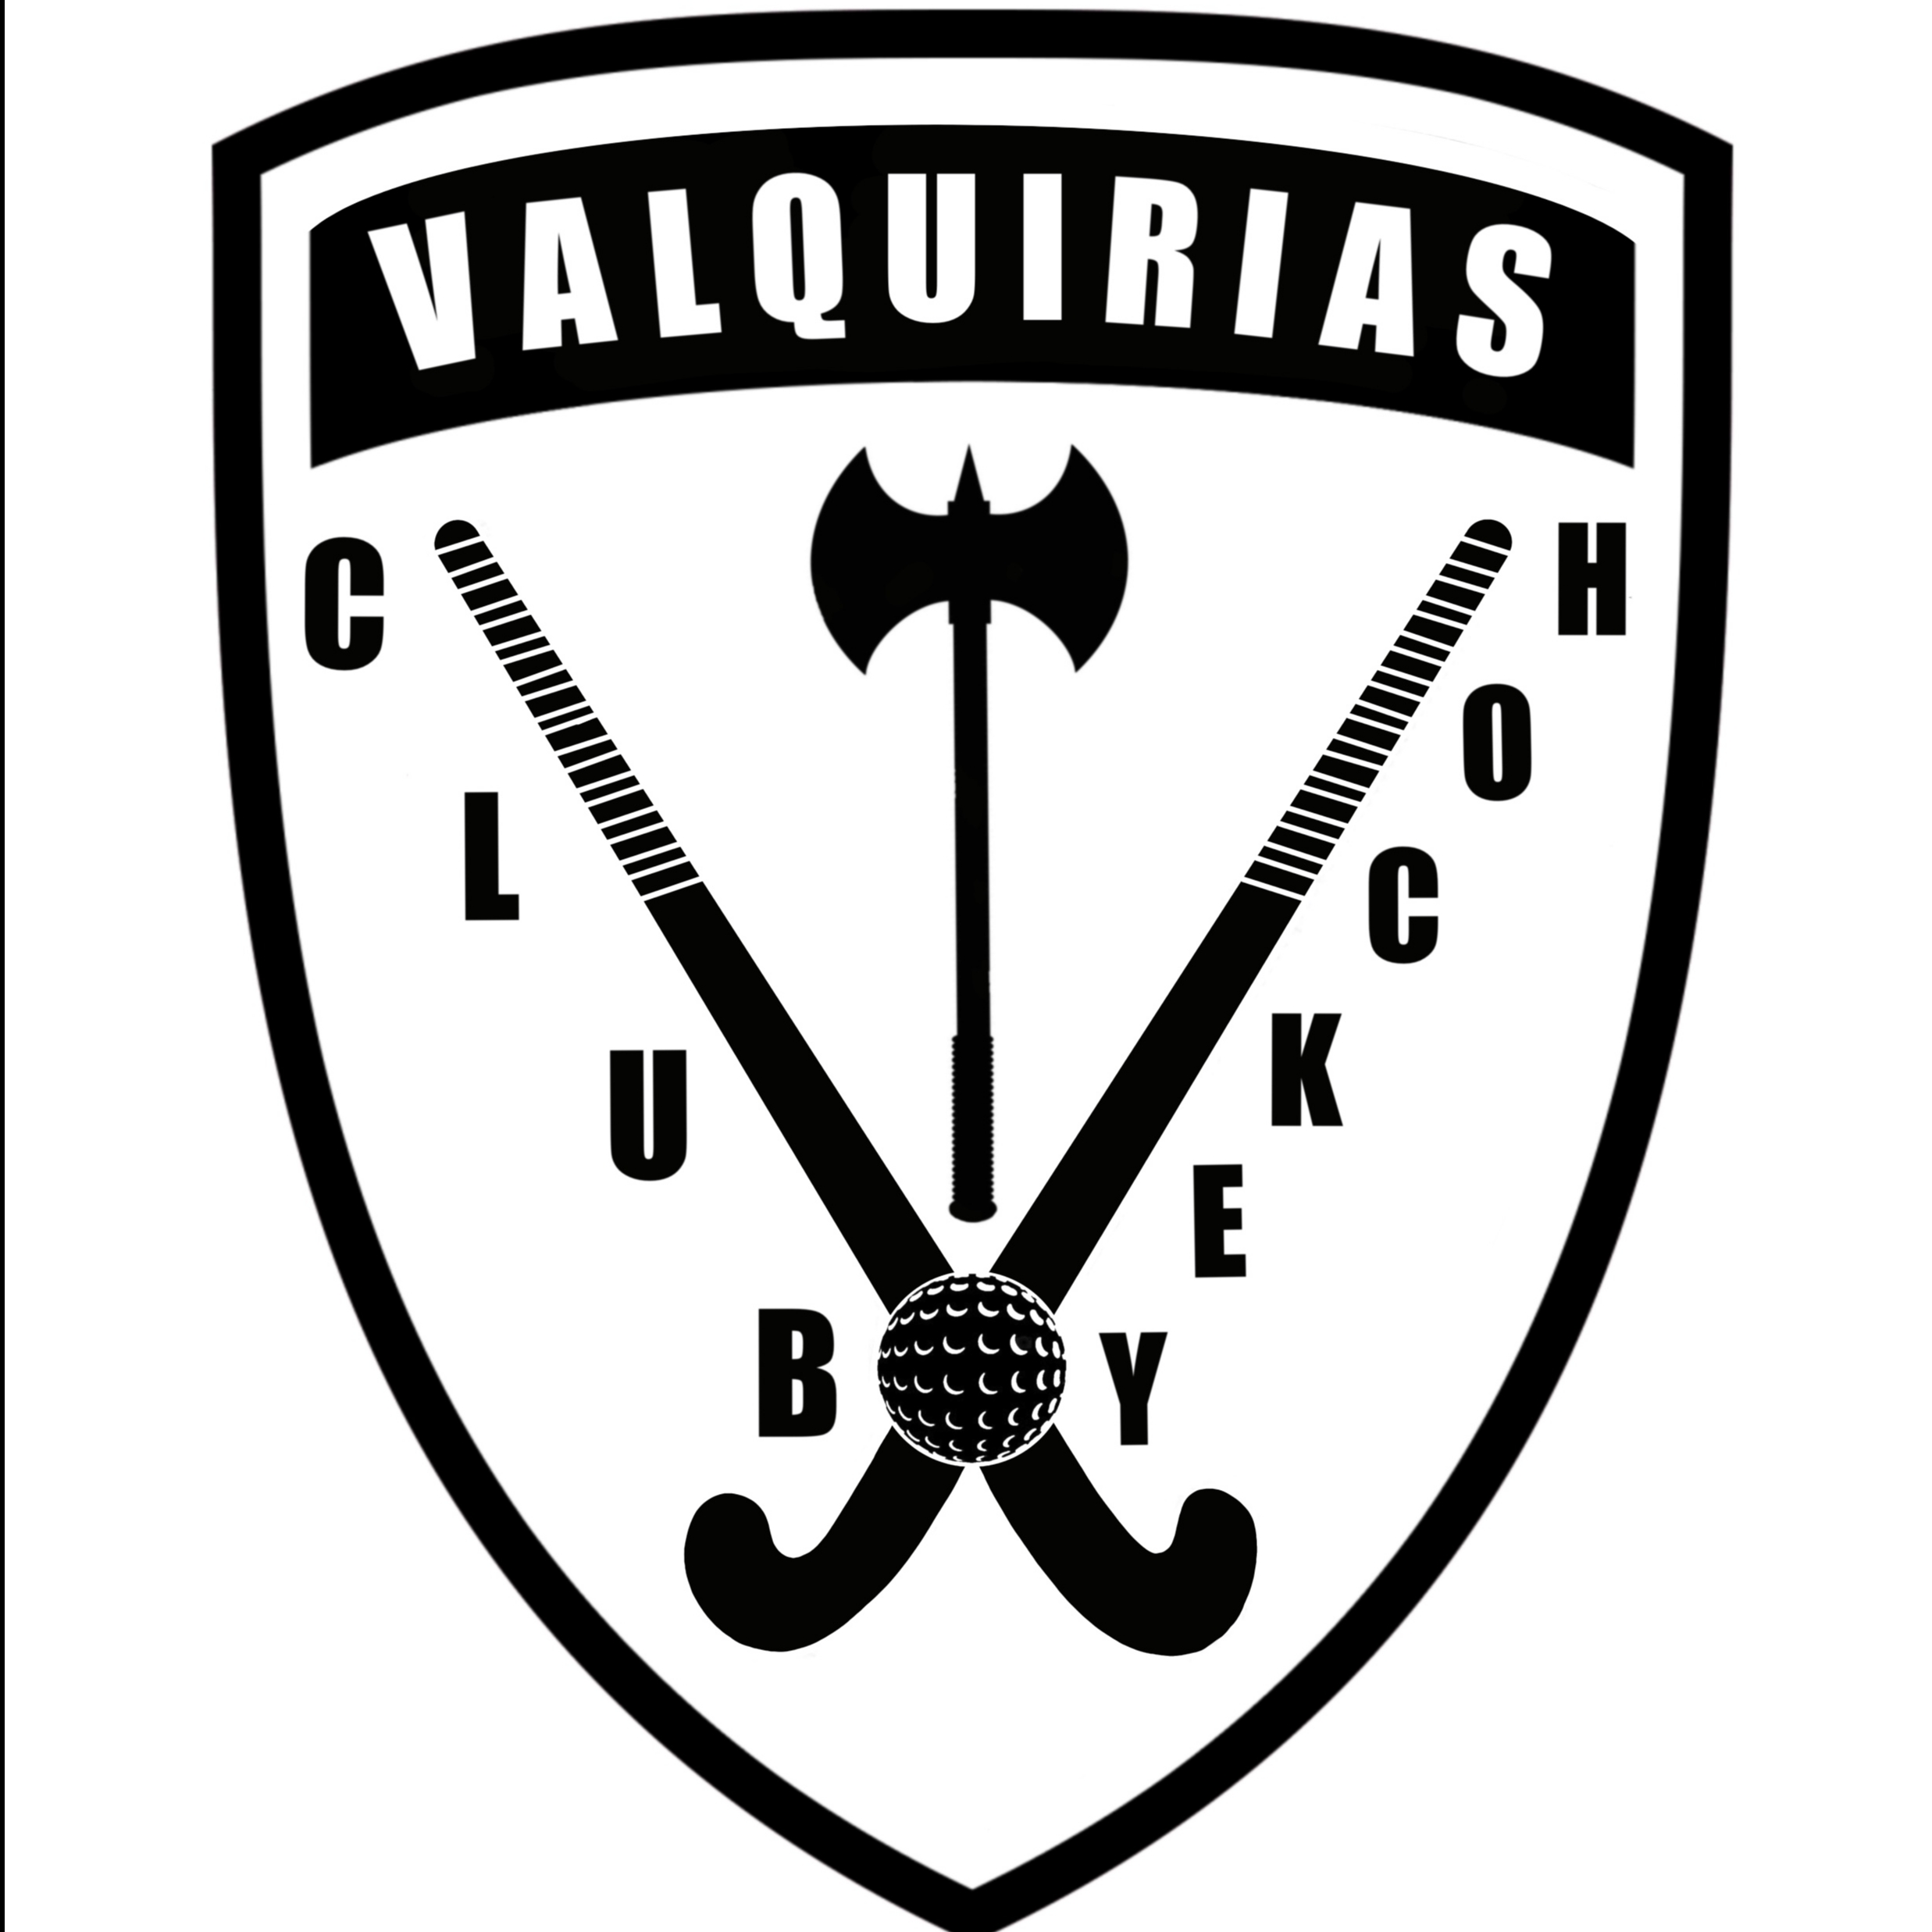 C.D.E. DE HOCKEY VALQUIRIAS